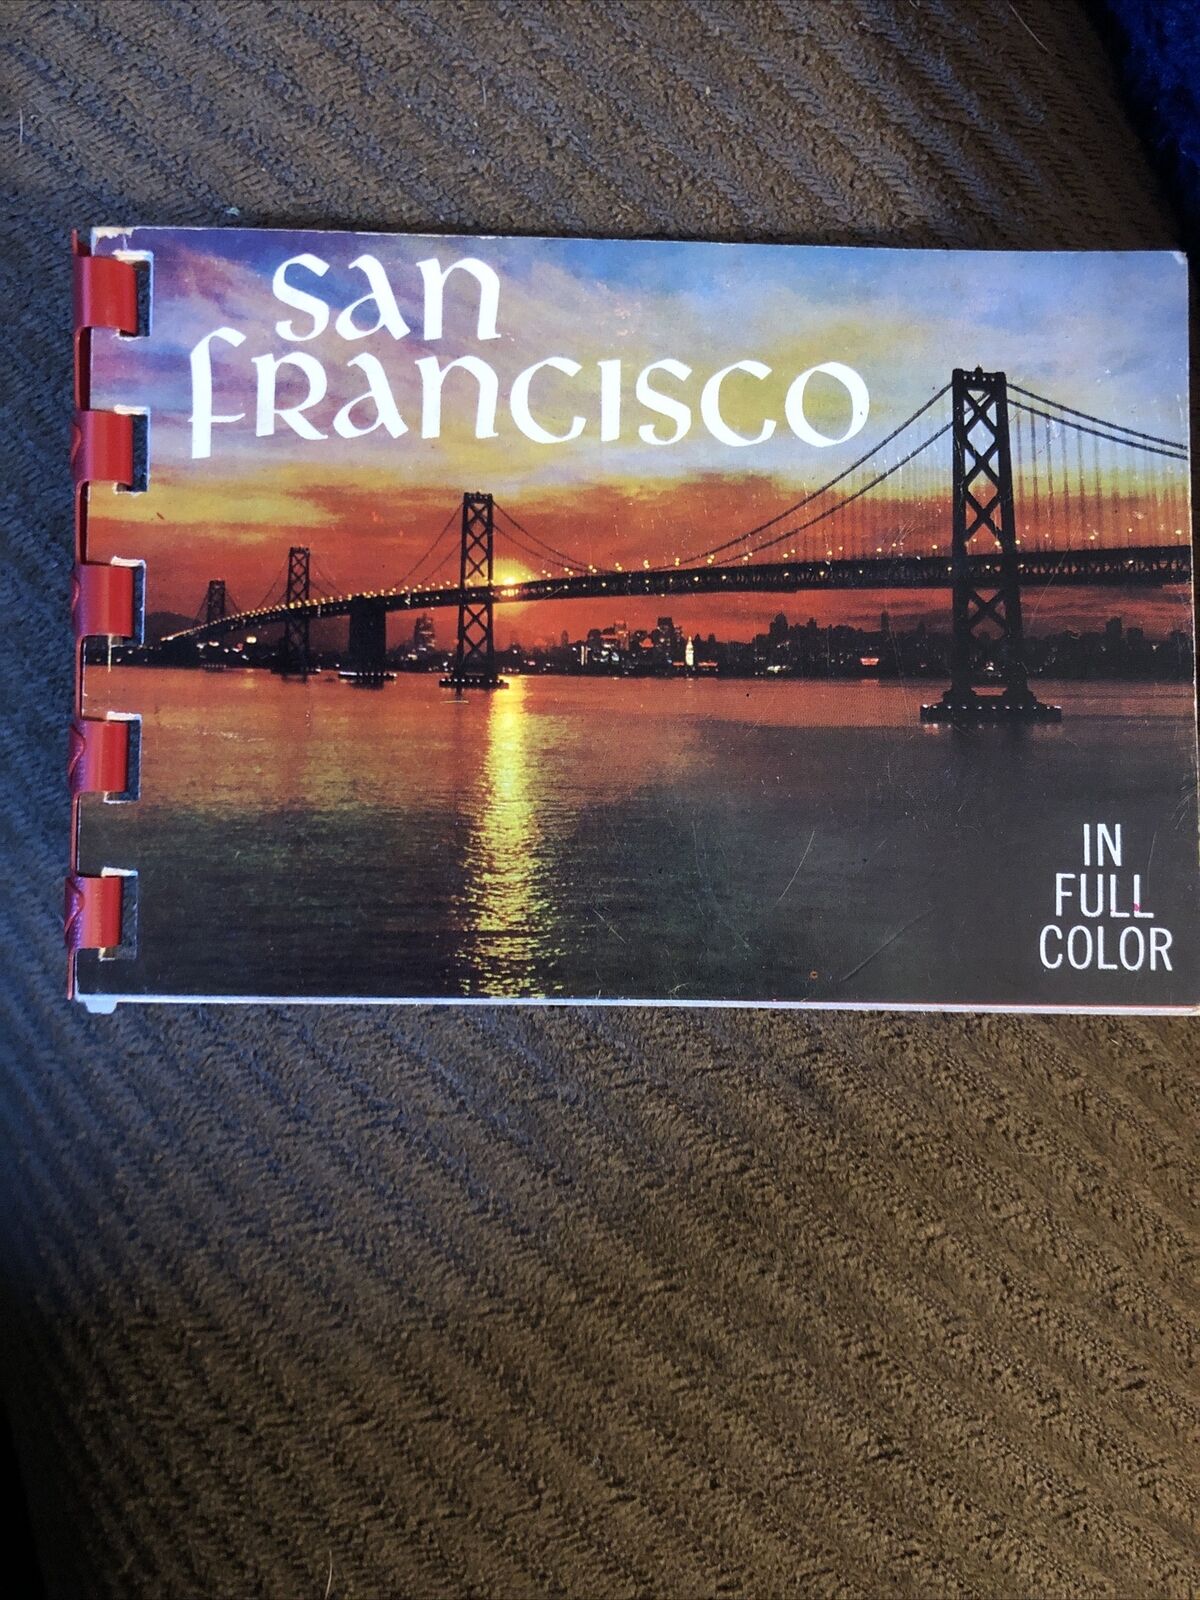 Vintage San Francisco, California Souvenir 7 Full Color Photo Album Book 1960s